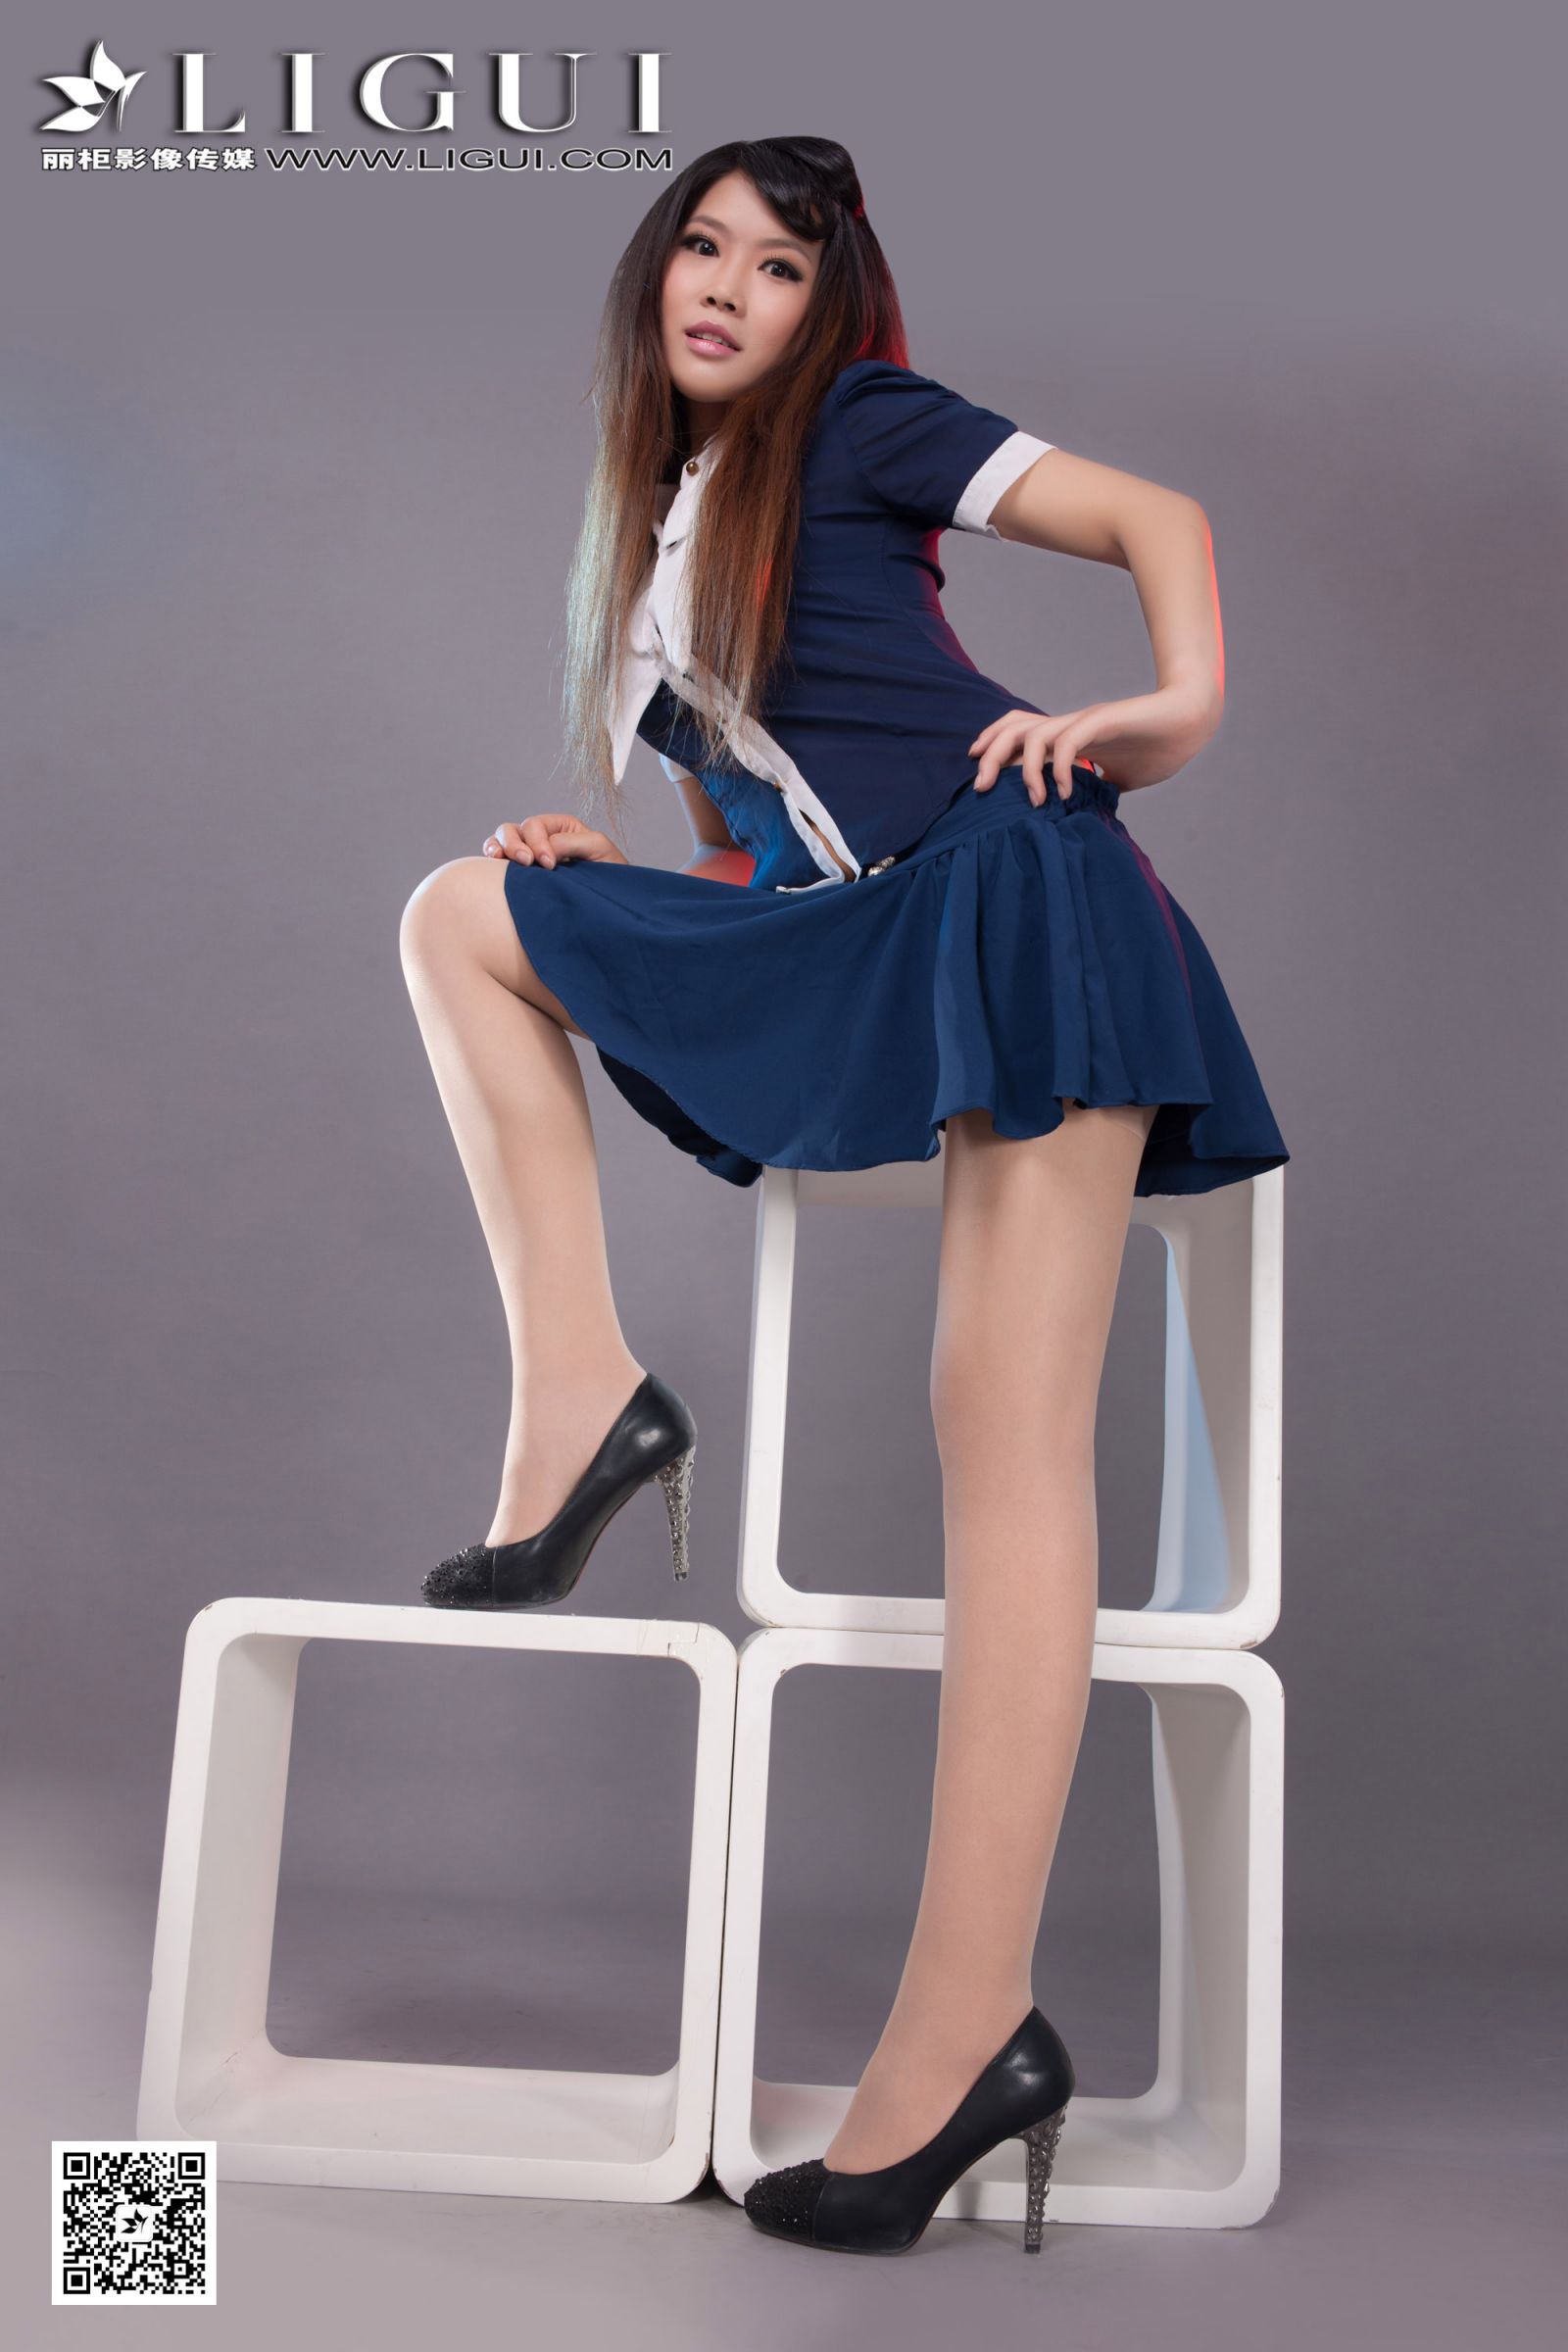 [Ligui丽柜] Model 怡萱 - 超短裙美腿高跟美足